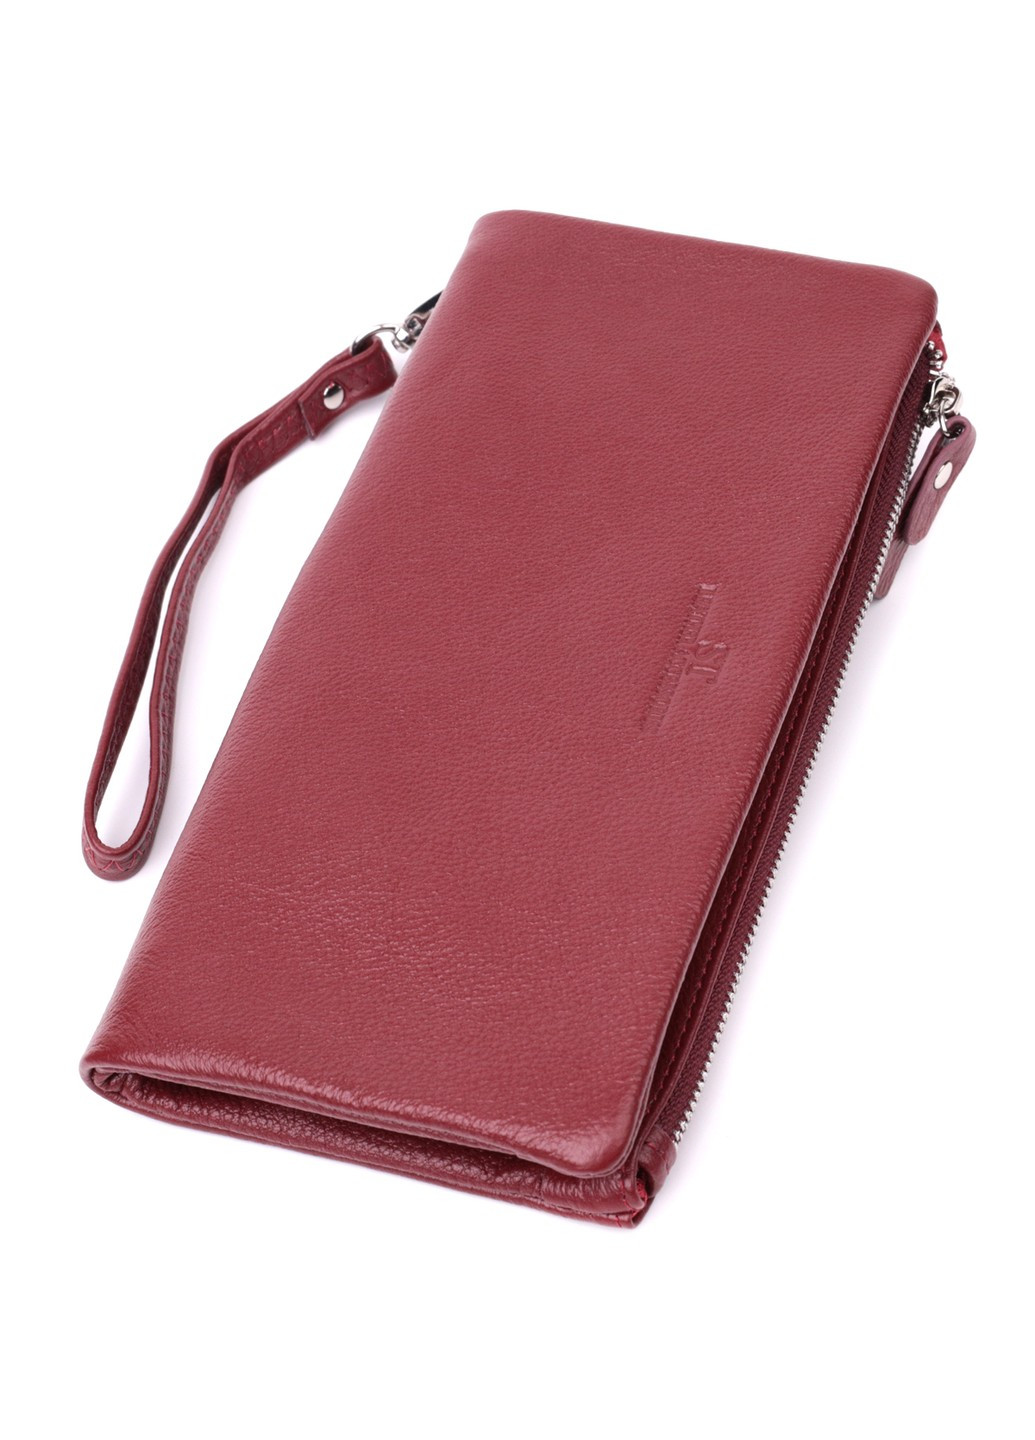 Добротный женский кошелек-клатч с двумя молниями из натуральной кожи 22528 Бордовый st leather (277980433)